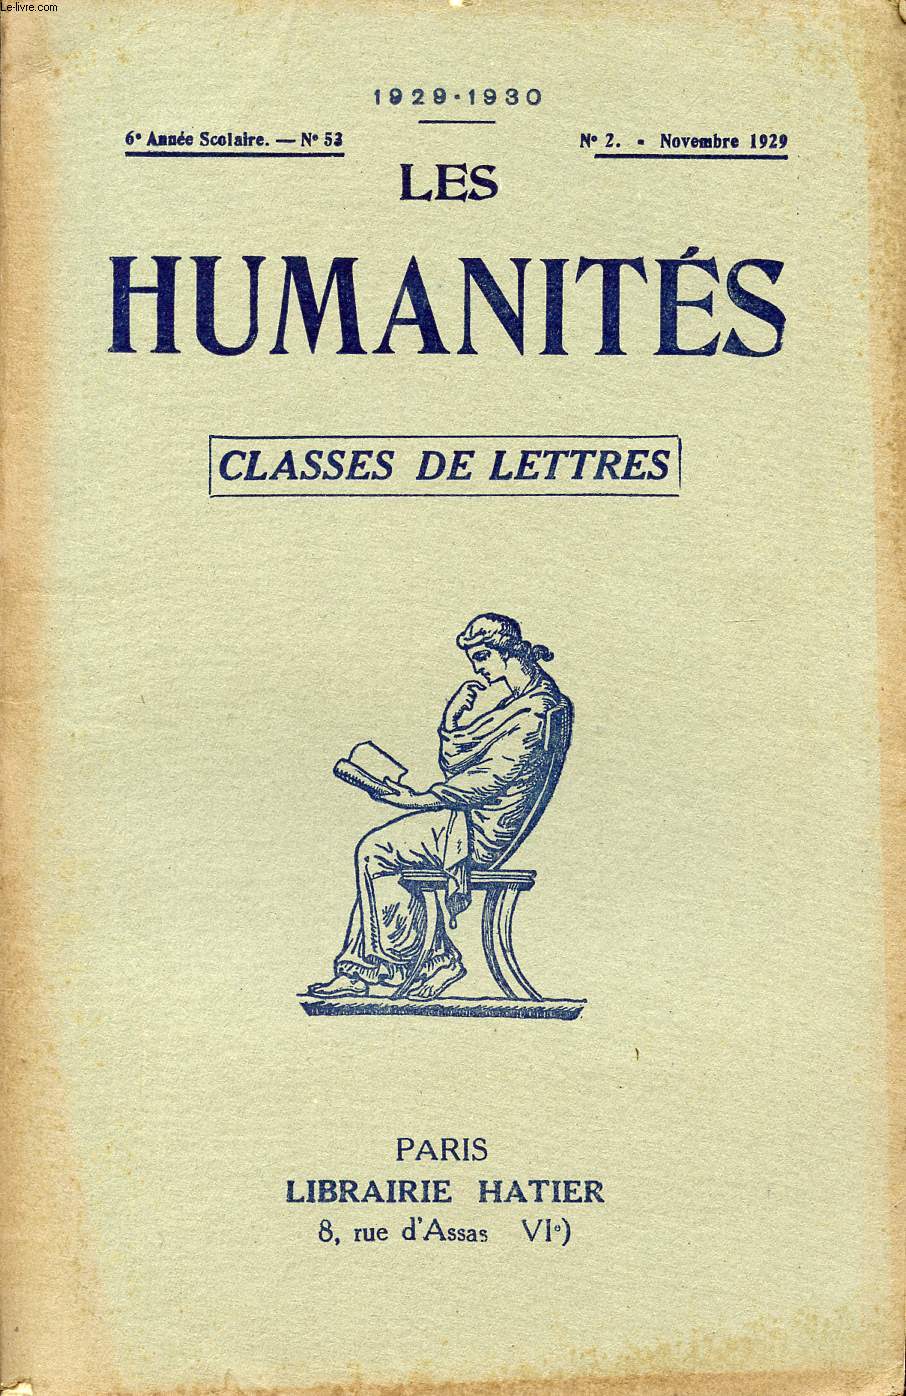 LES HUMANITES / CLASSES DE LETTRES / 6me ANNEE SCOLAIRE - N53 / ANNEE 1929-1930 / N2 - NOVEMBRE 1929.